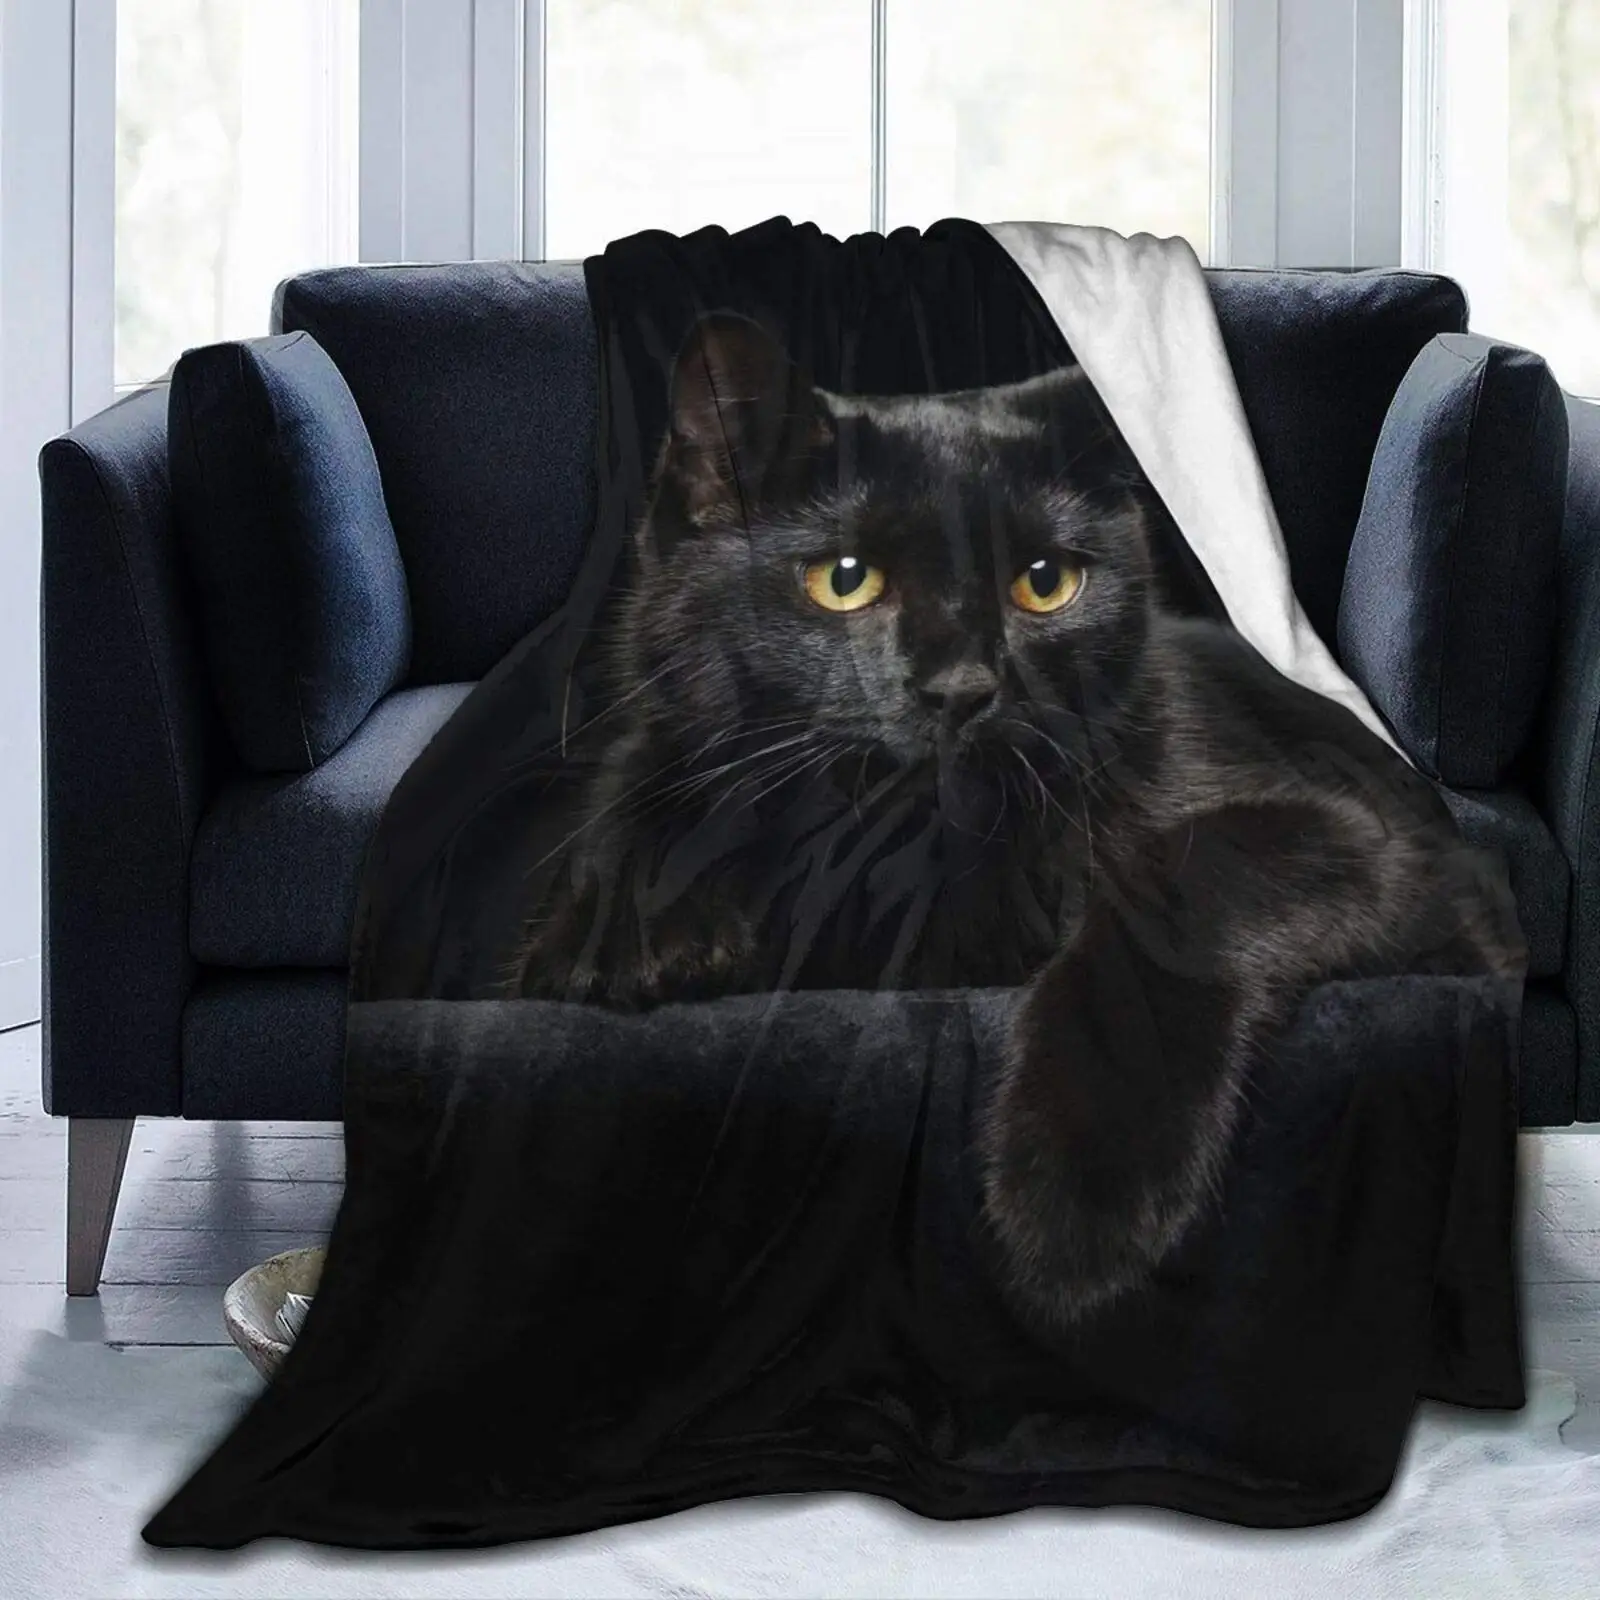 

Одеяло с изображением черной кошки, супермягкое удобное Фланелевое покрывало, плюшевое покрывало с принтом котят, простыня для кровати, накидка для дивана, шаль для дома